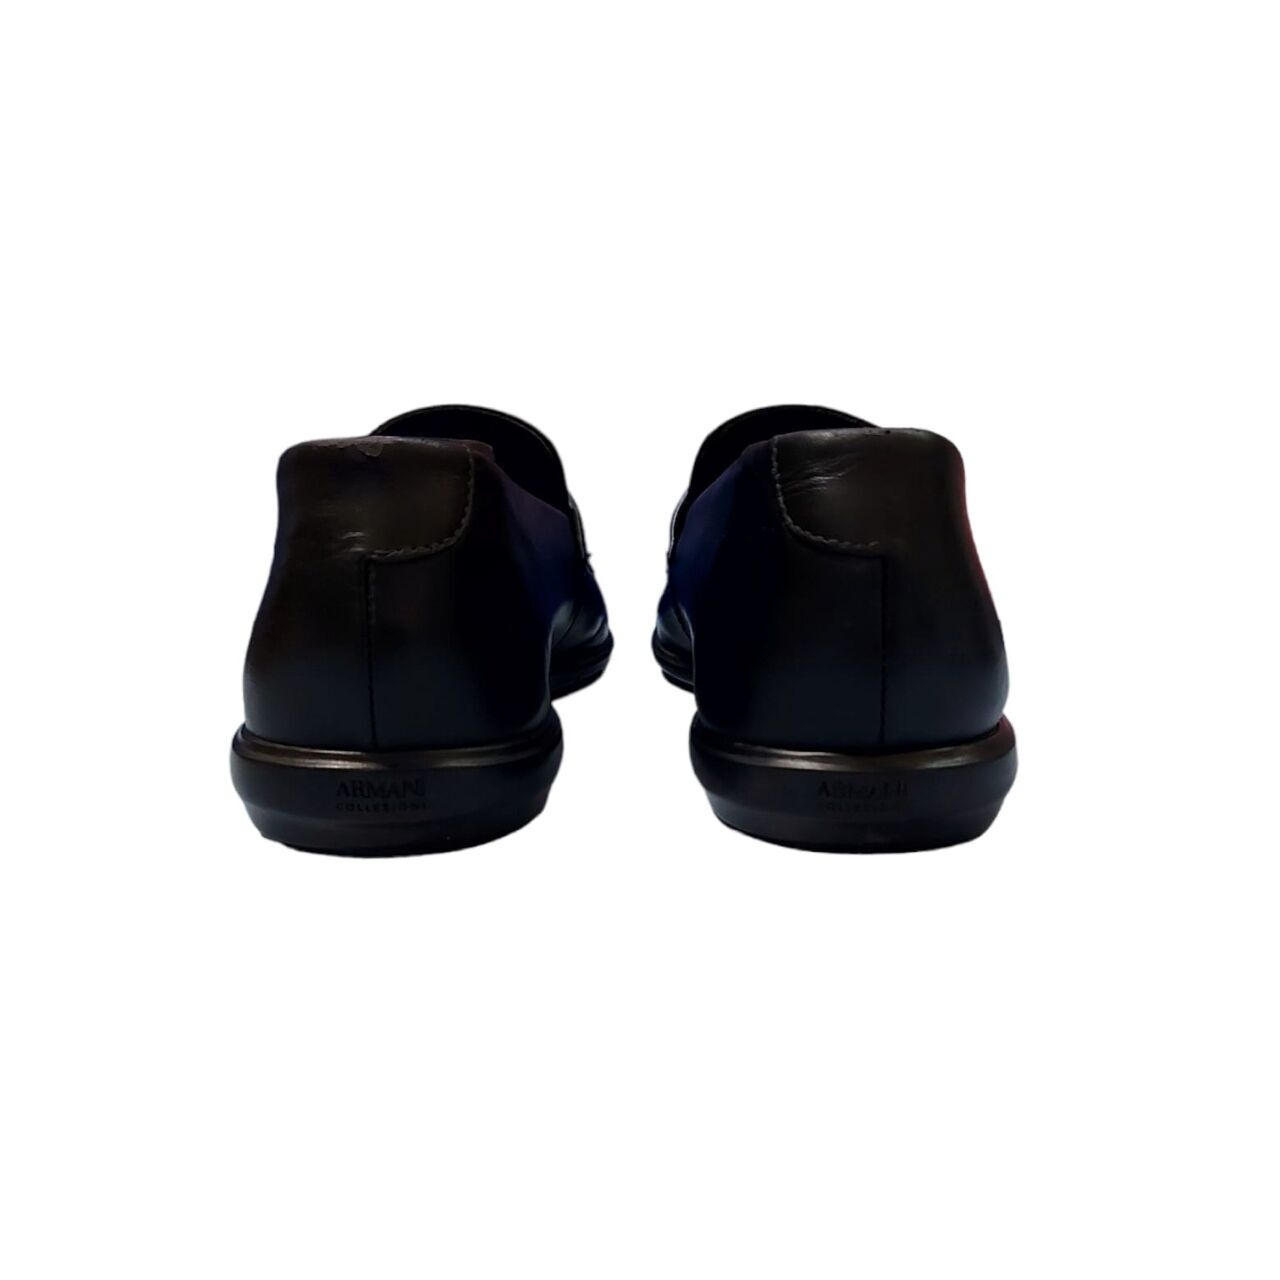 Armani Collezioni Black Loafers